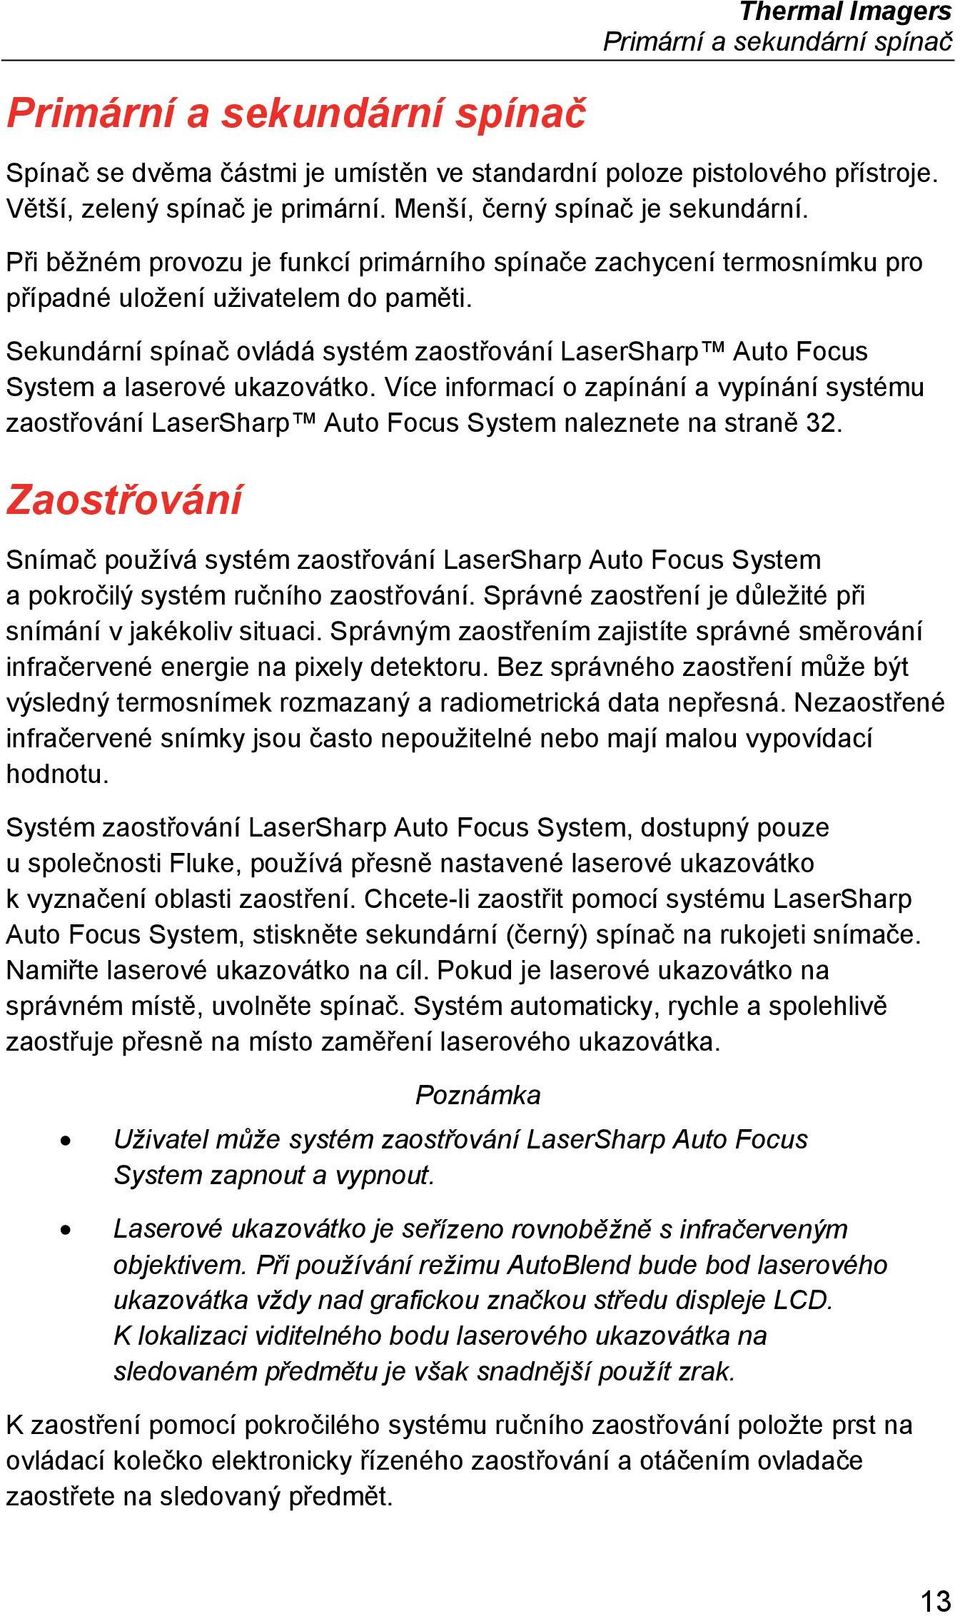 Sekundární spínač ovládá systém zaostřování LaserSharp Auto Focus System a laserové ukazovátko.